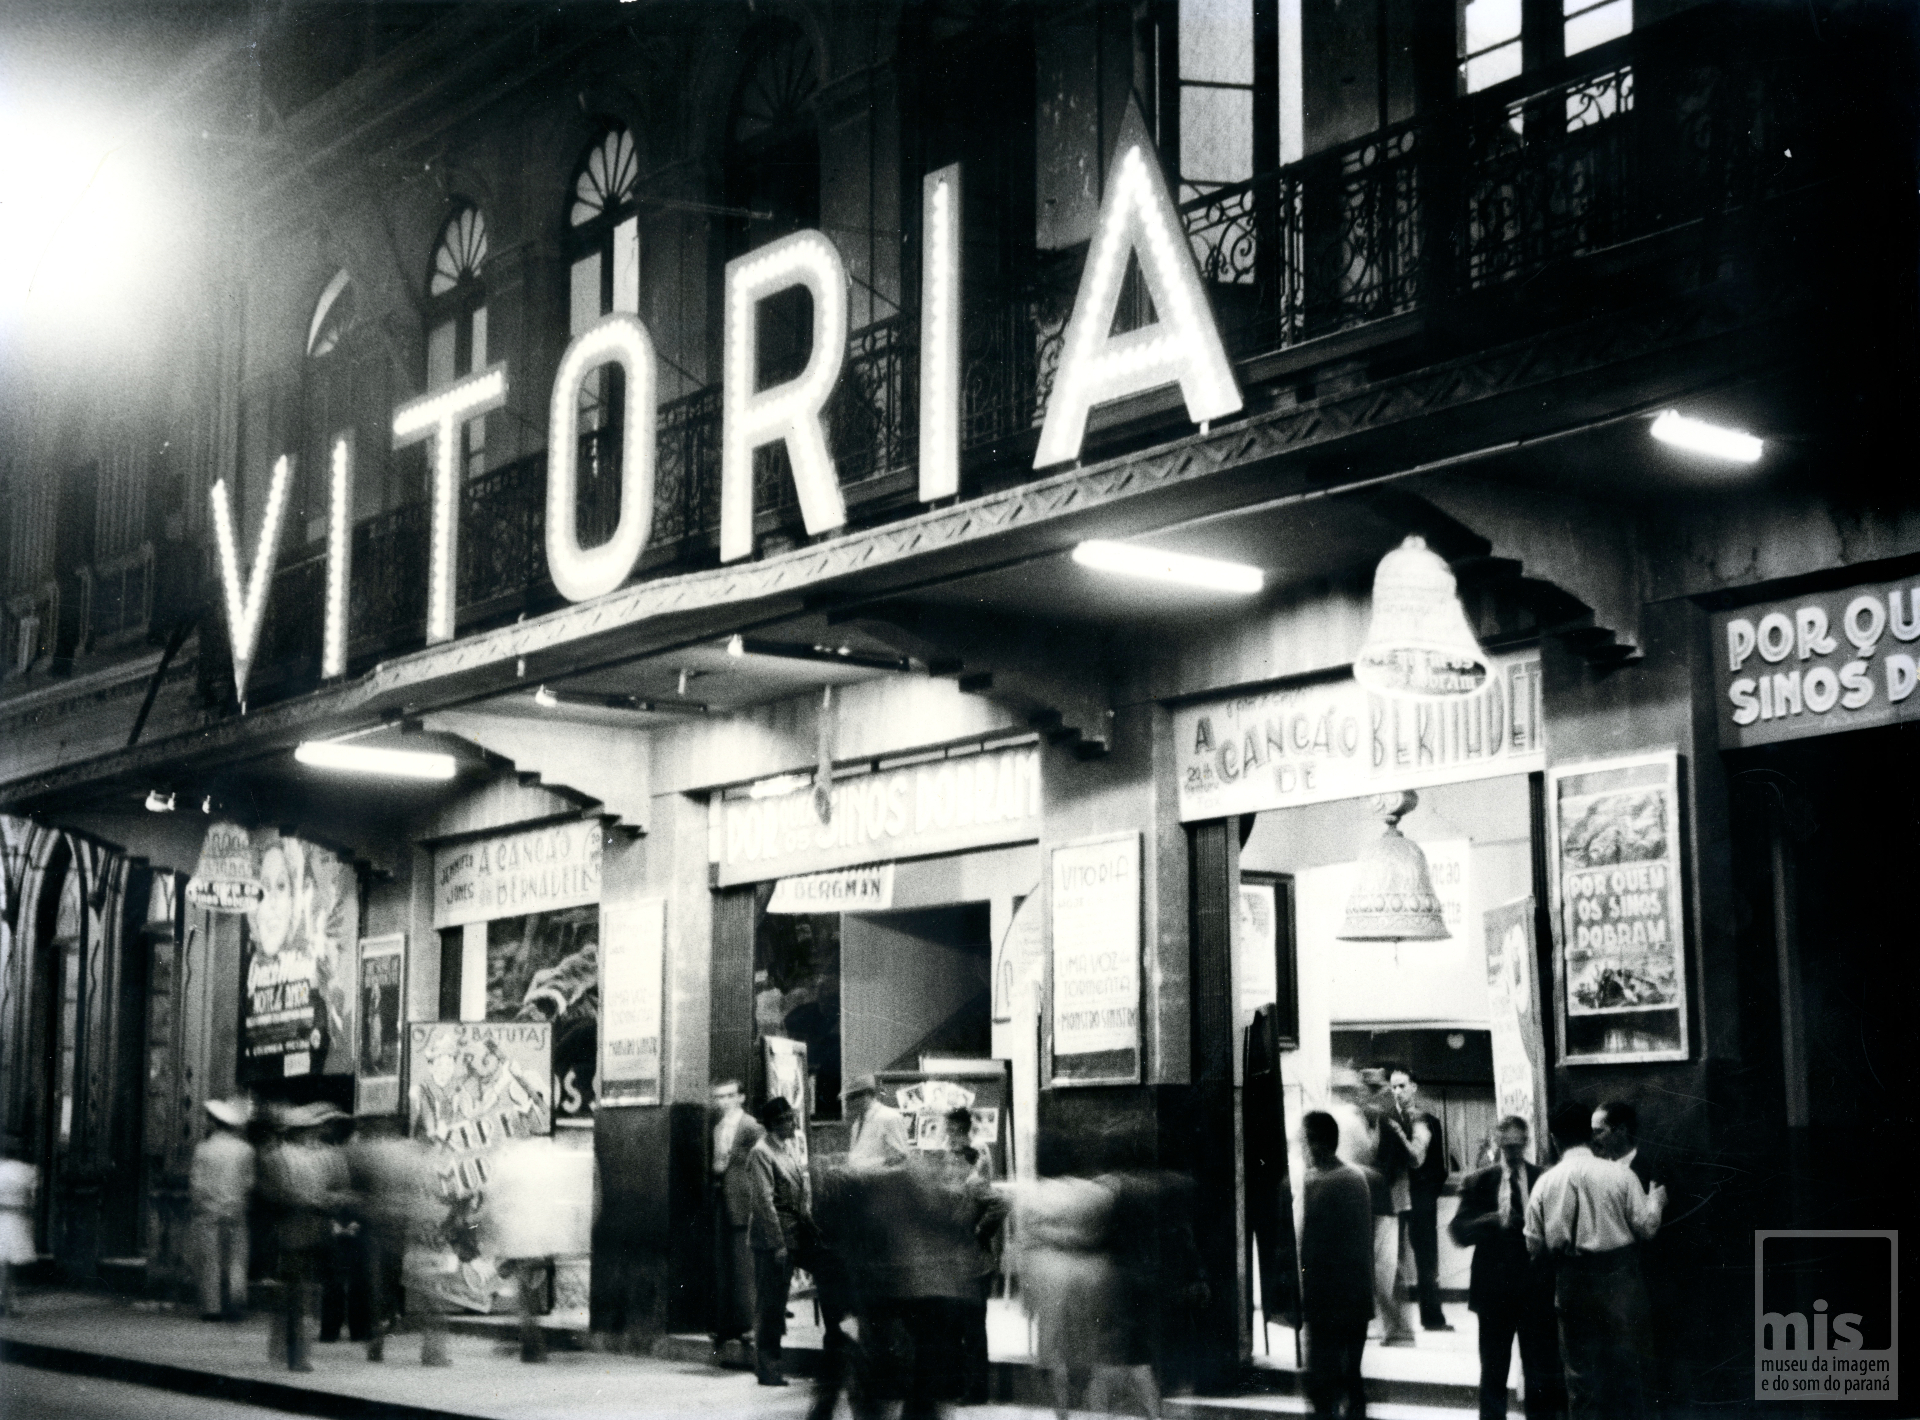 Fachada do Cine Vitória, na Rua XV de Novembro, Curitiba, década de 1940